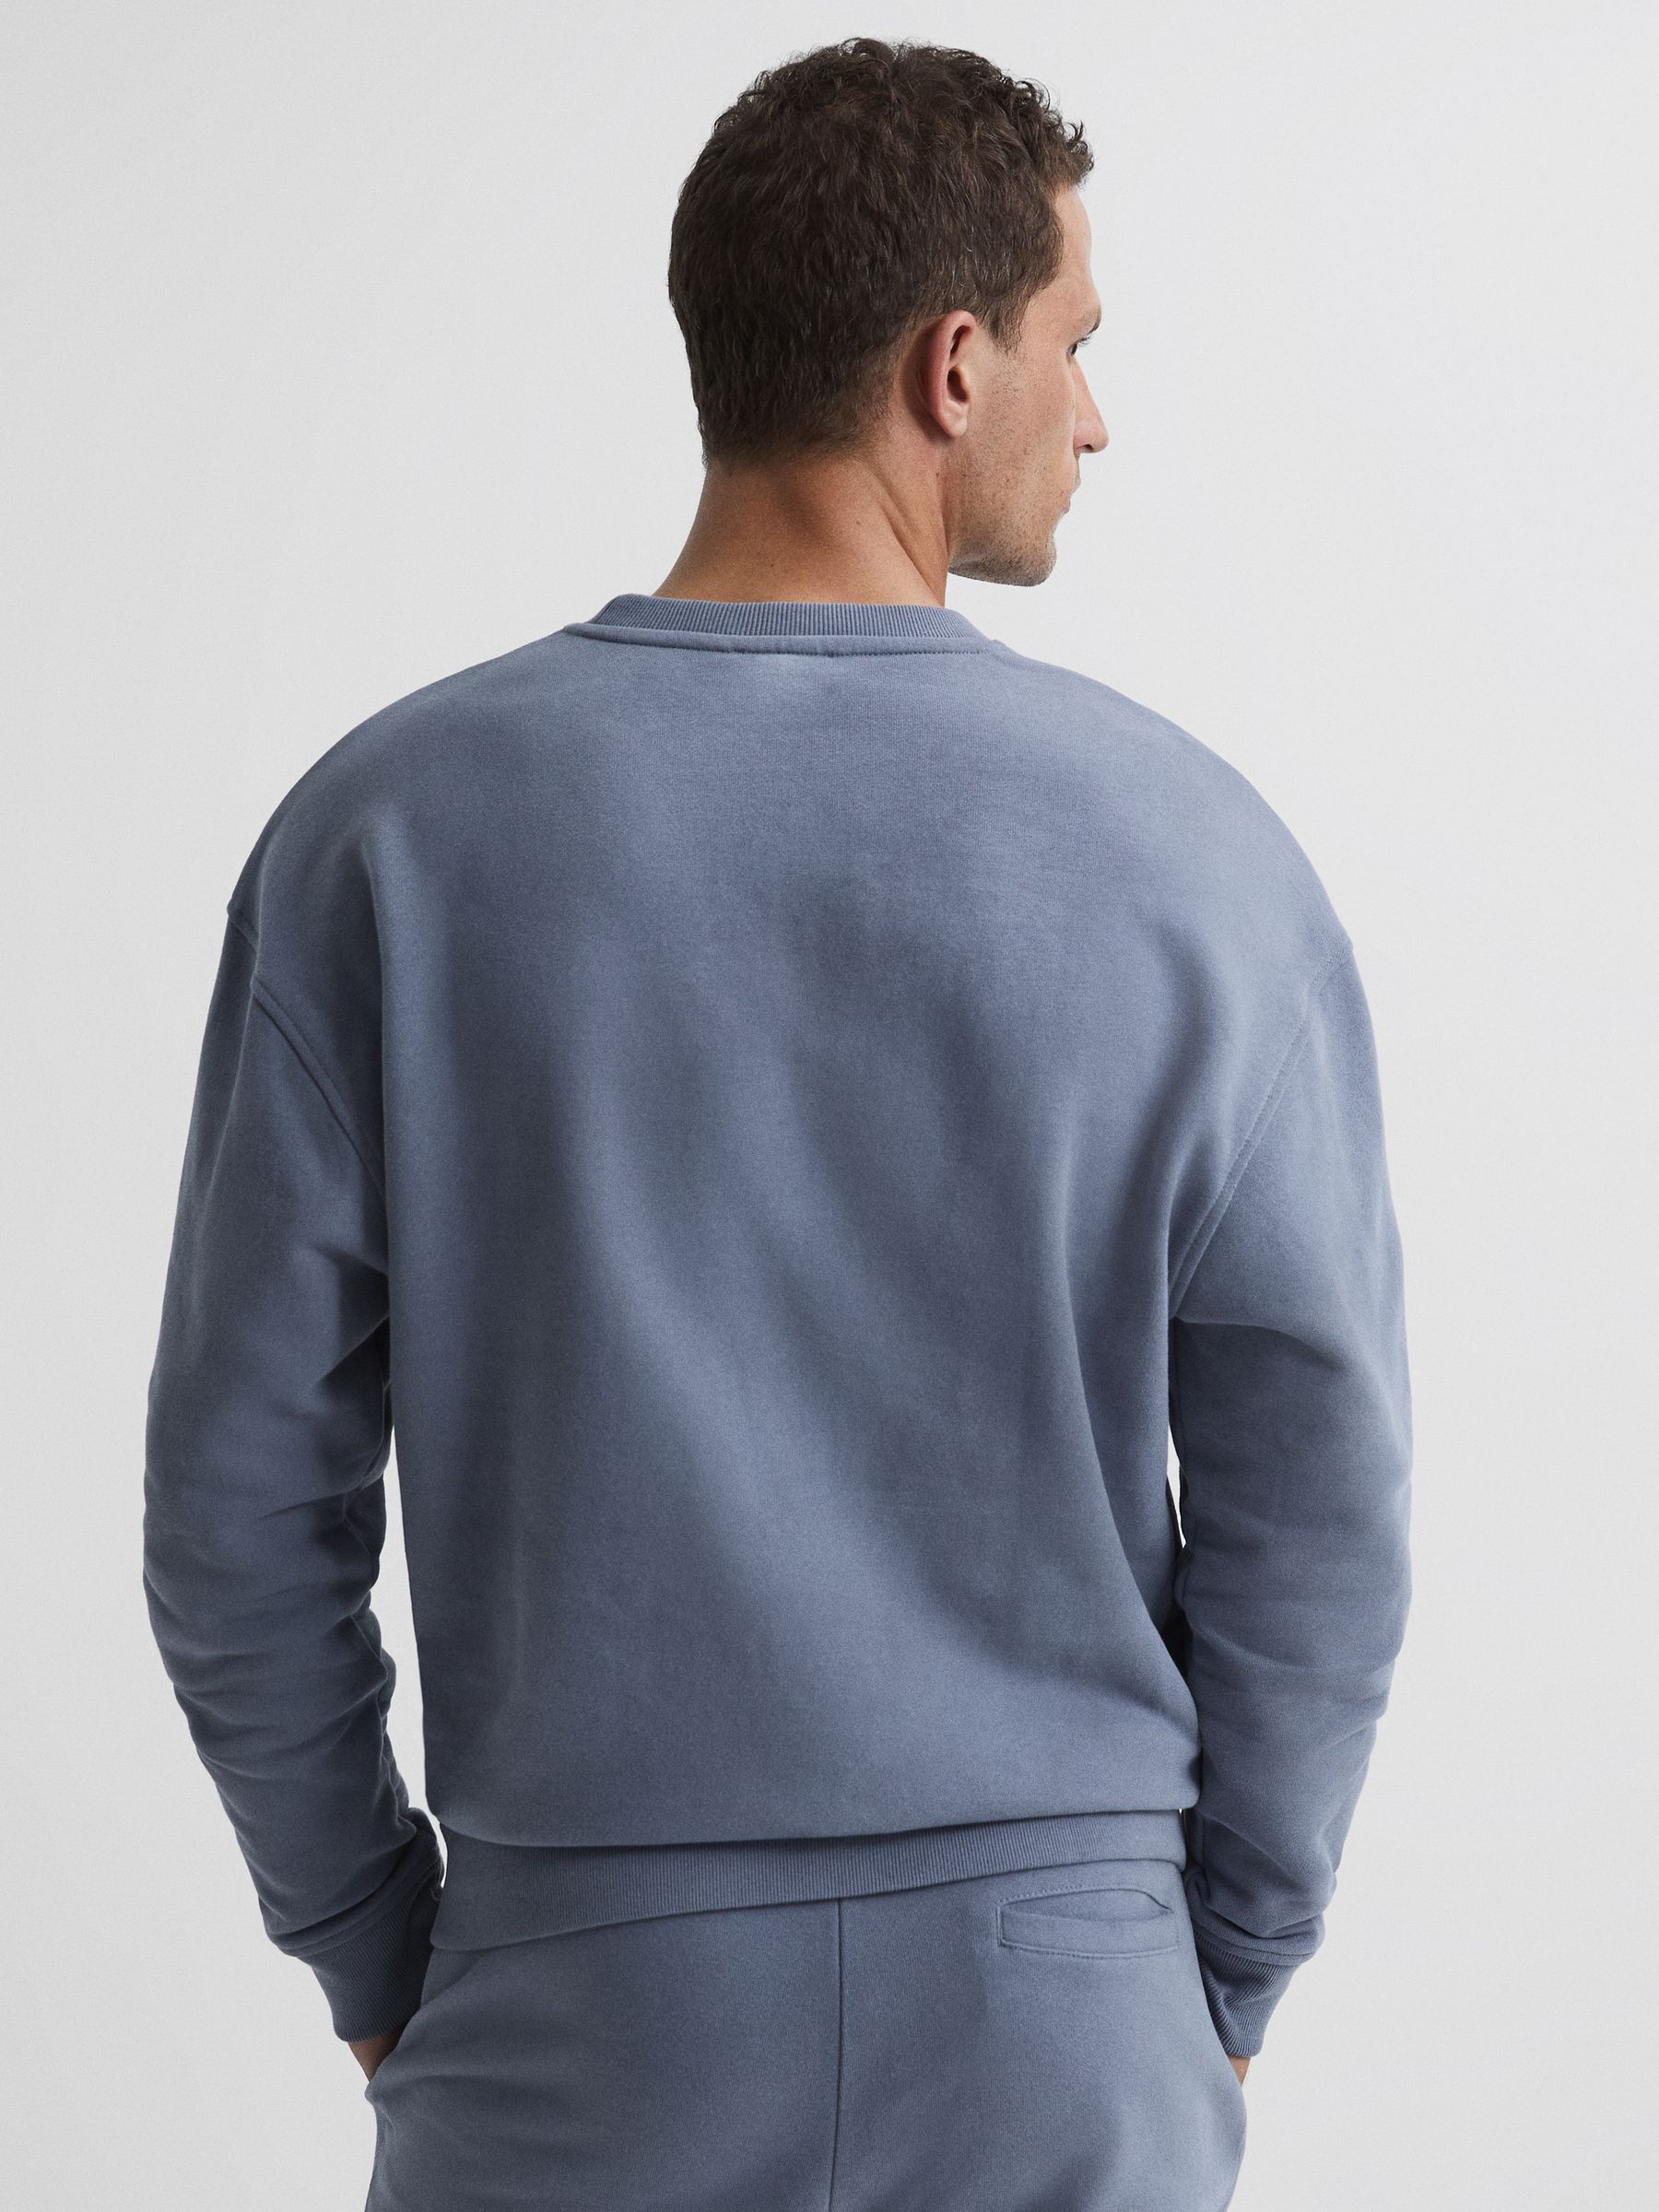 Reiss Alistar Oversized Garment Dye Sweatshirt - REISS